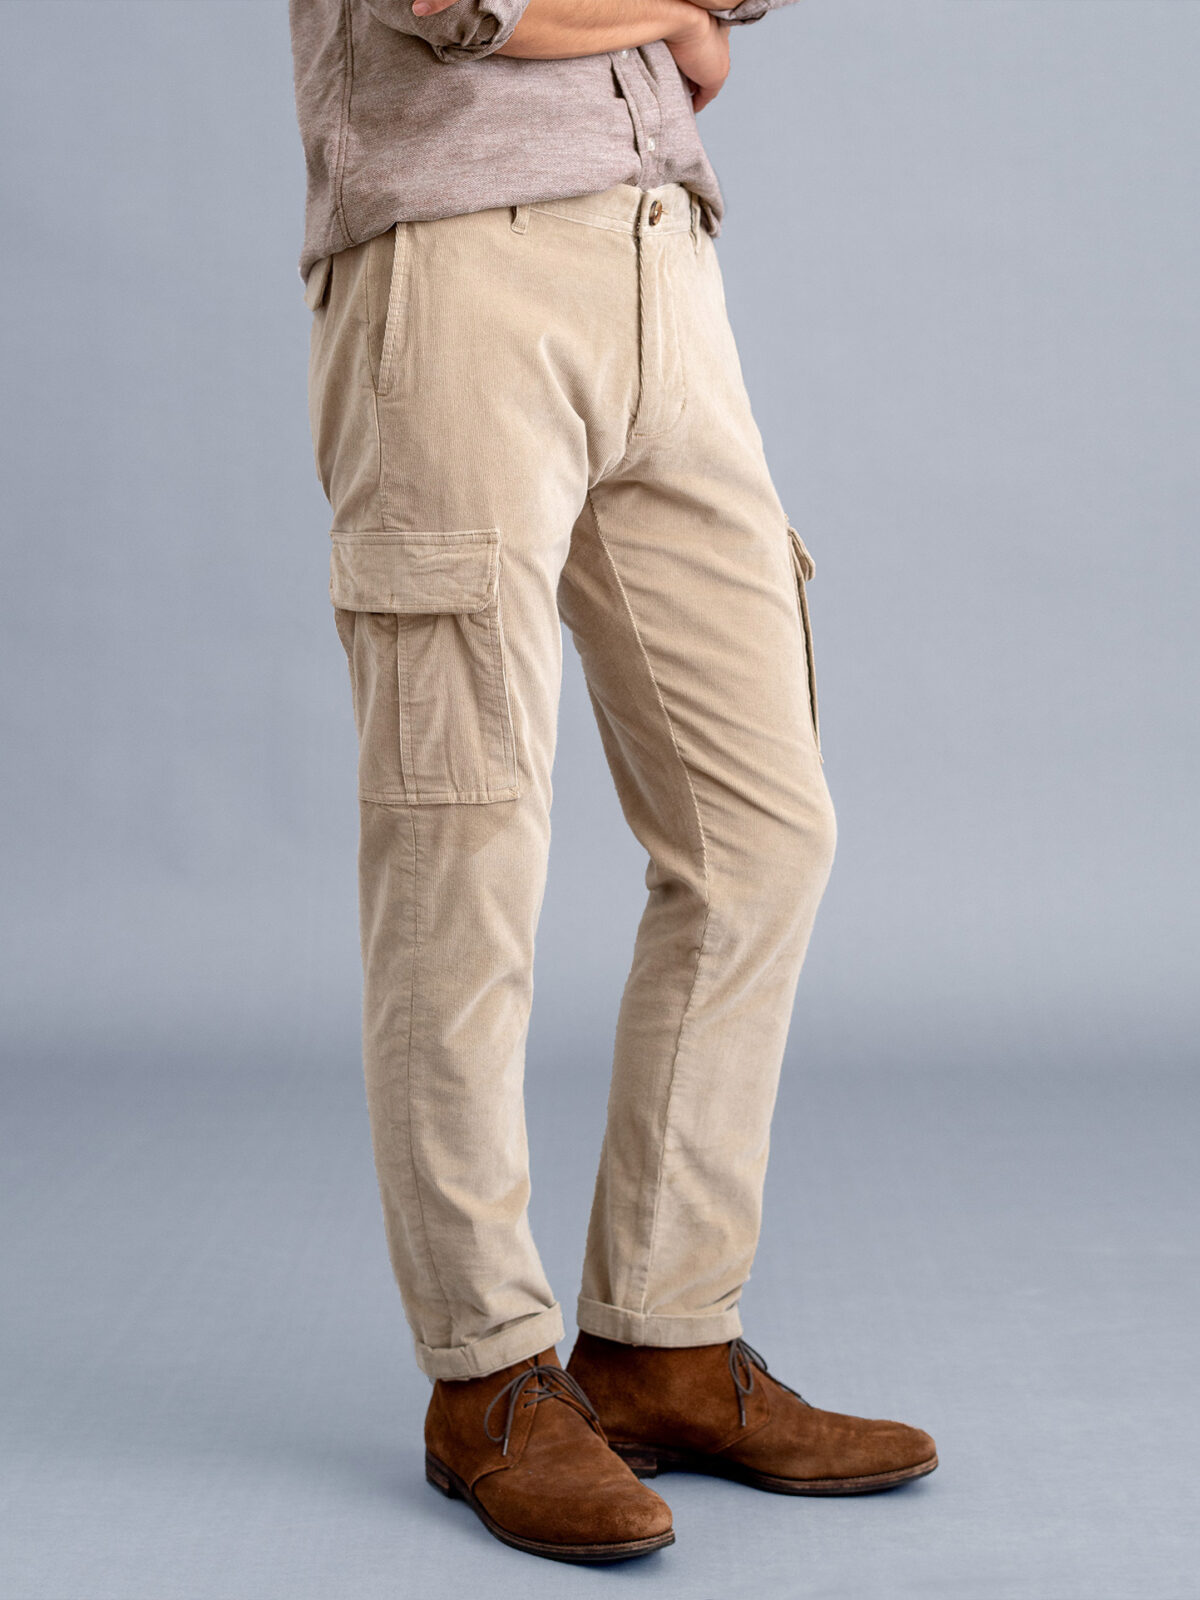 Vintage Kik Wear Corduroy Cargo Pants Men's Size M Brown Chinchable Waist  31X29 | eBay